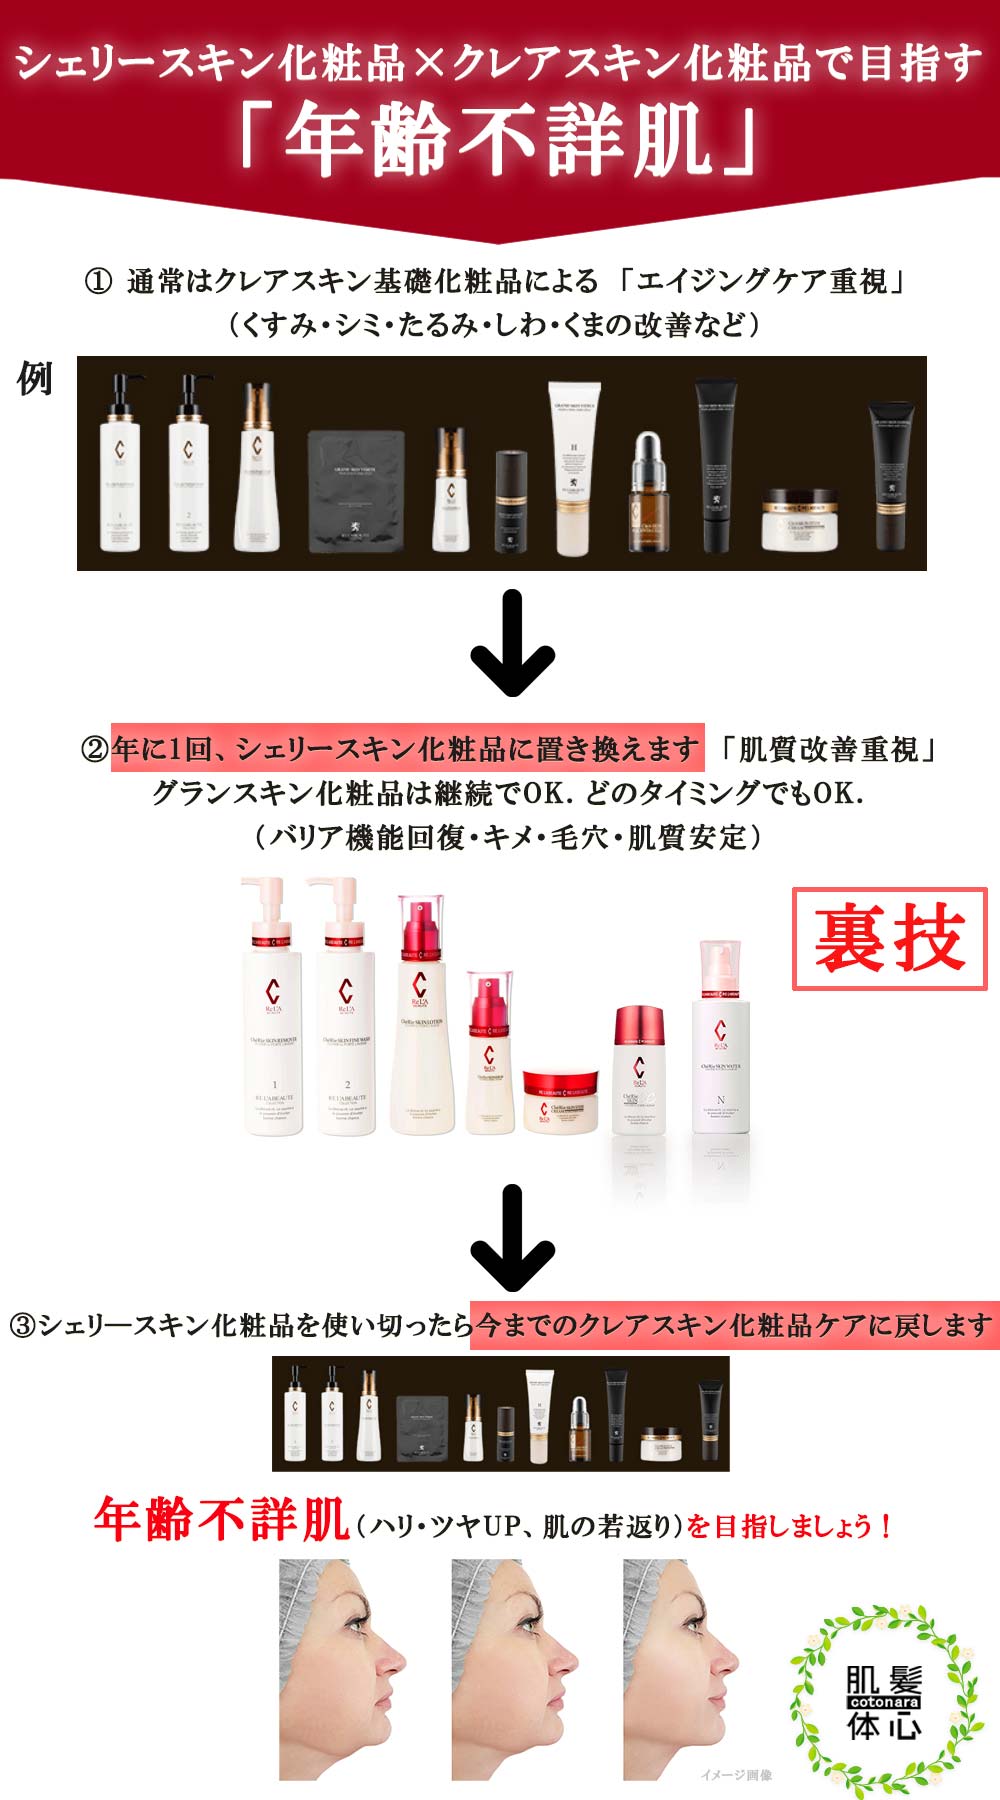 新商品】リアボーテ シェリースキン化粧品のご購入はこちら | 東京 